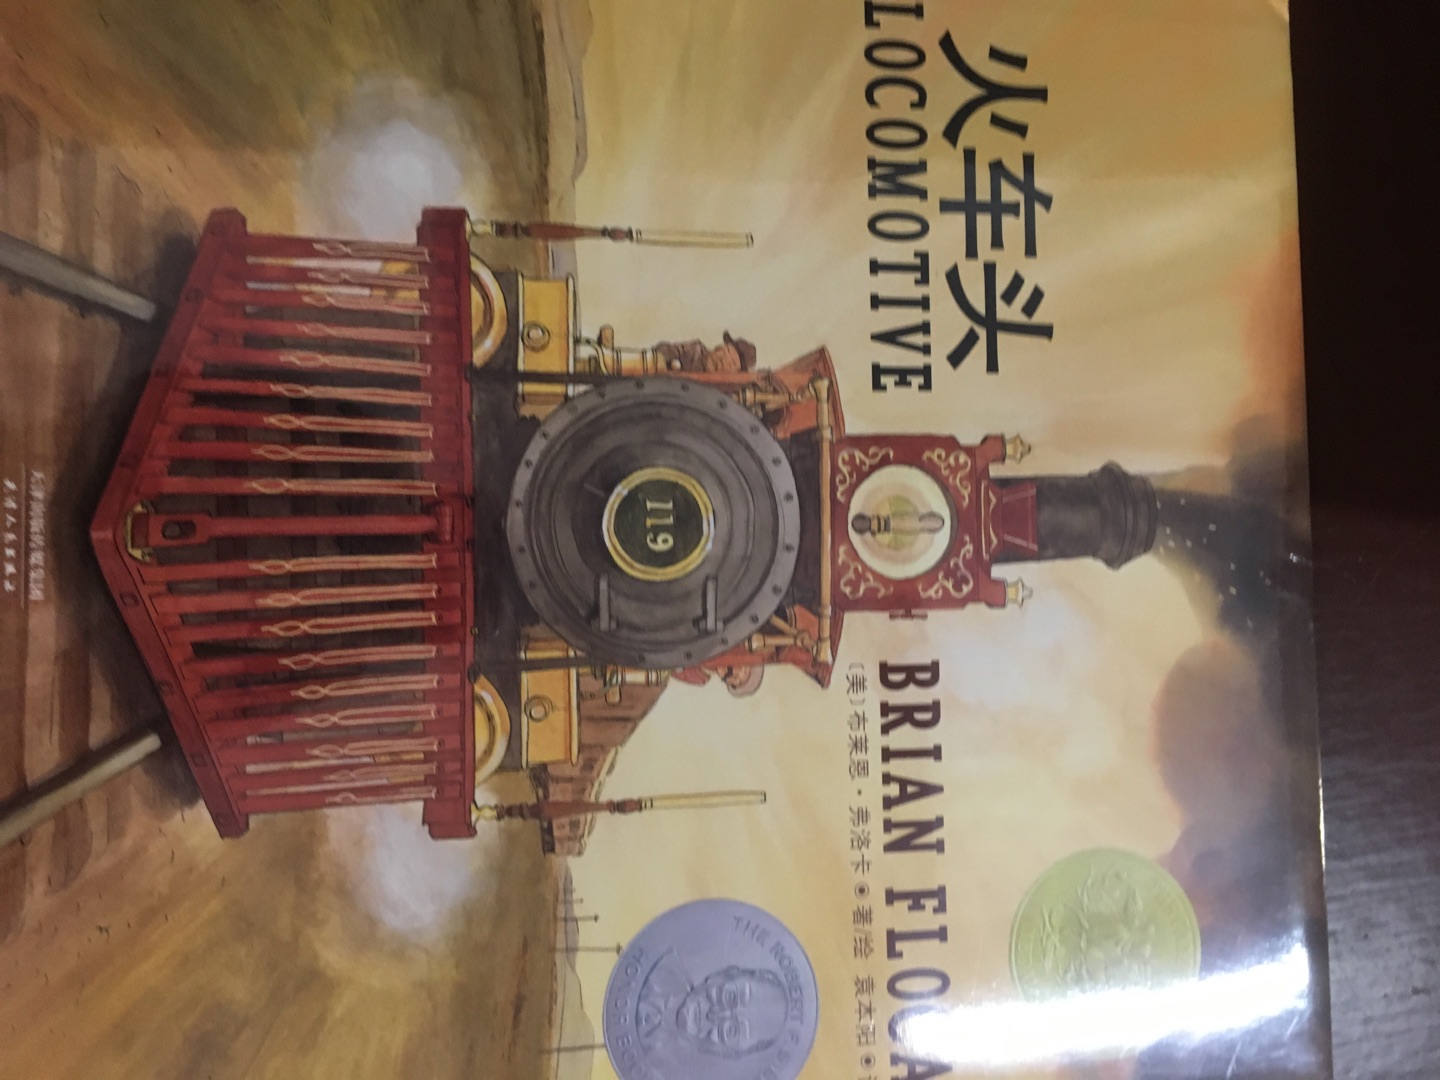 凯迪克金奖作品，火车迷的最爱，重现人类交通史上的伟大时刻，插画精美细腻，是一本很好的科普书。